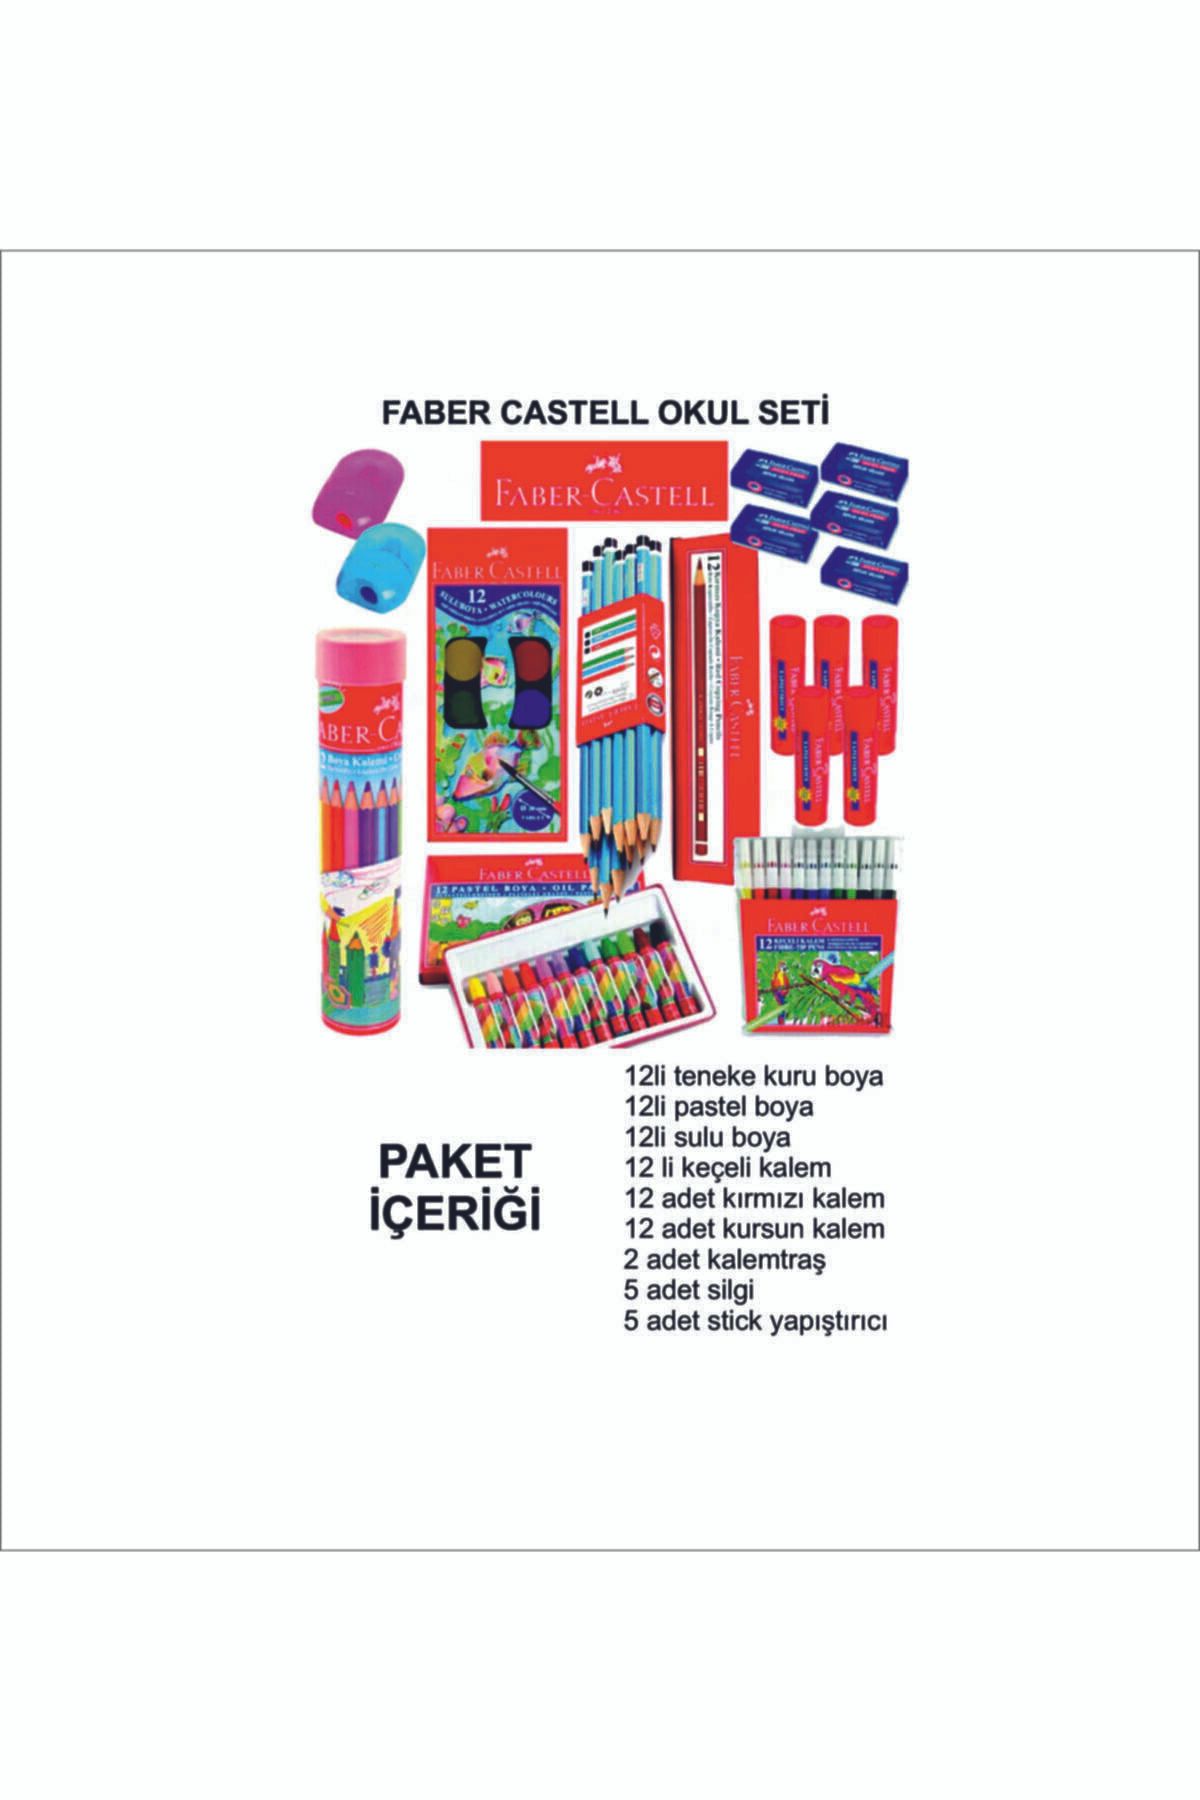 Faber Castell Fabercastell Okul Paketi 9 Parça